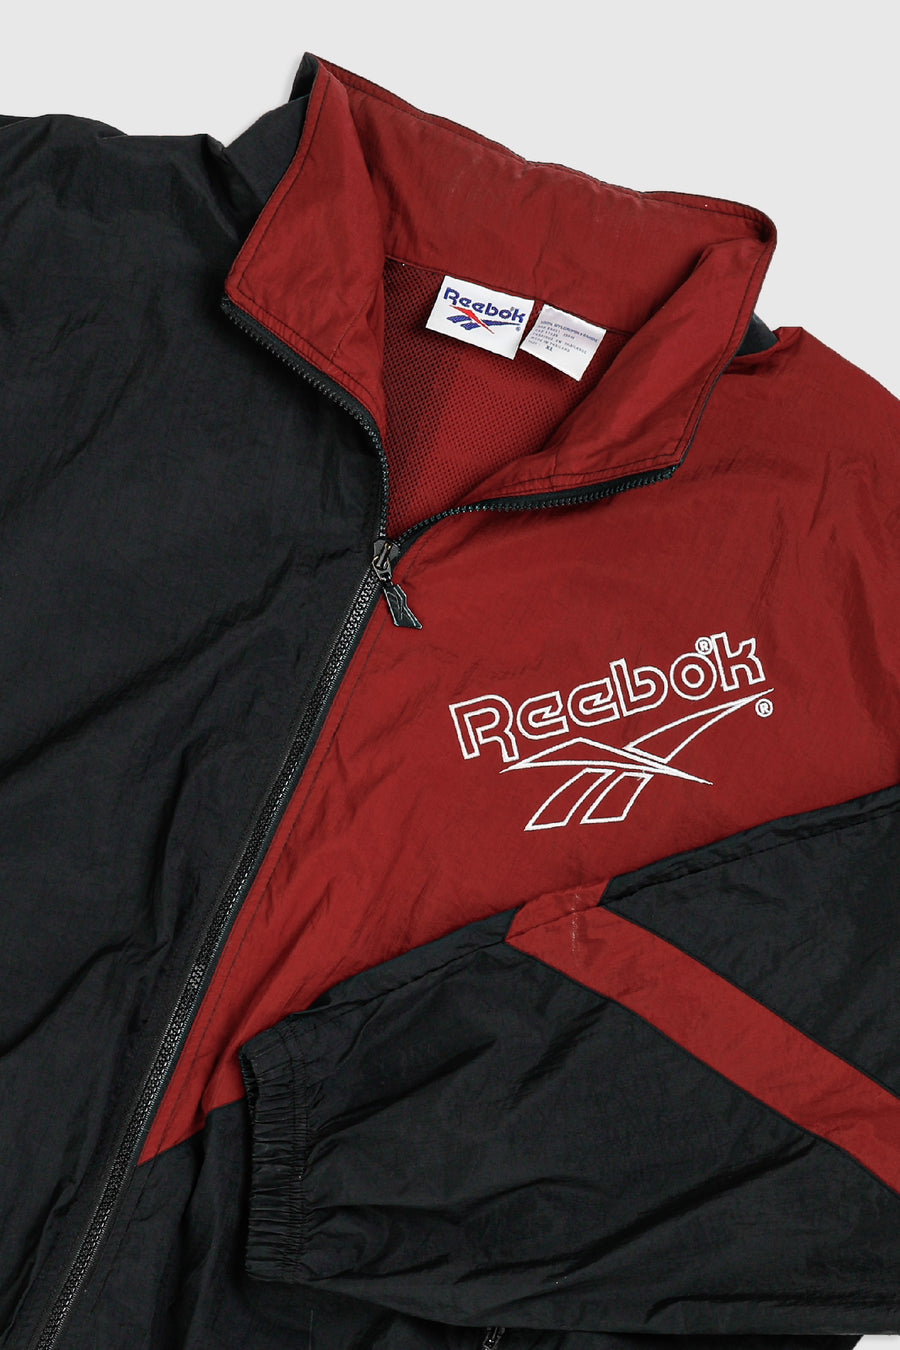 Vintage Reebok Windbreaker Jacket - XL